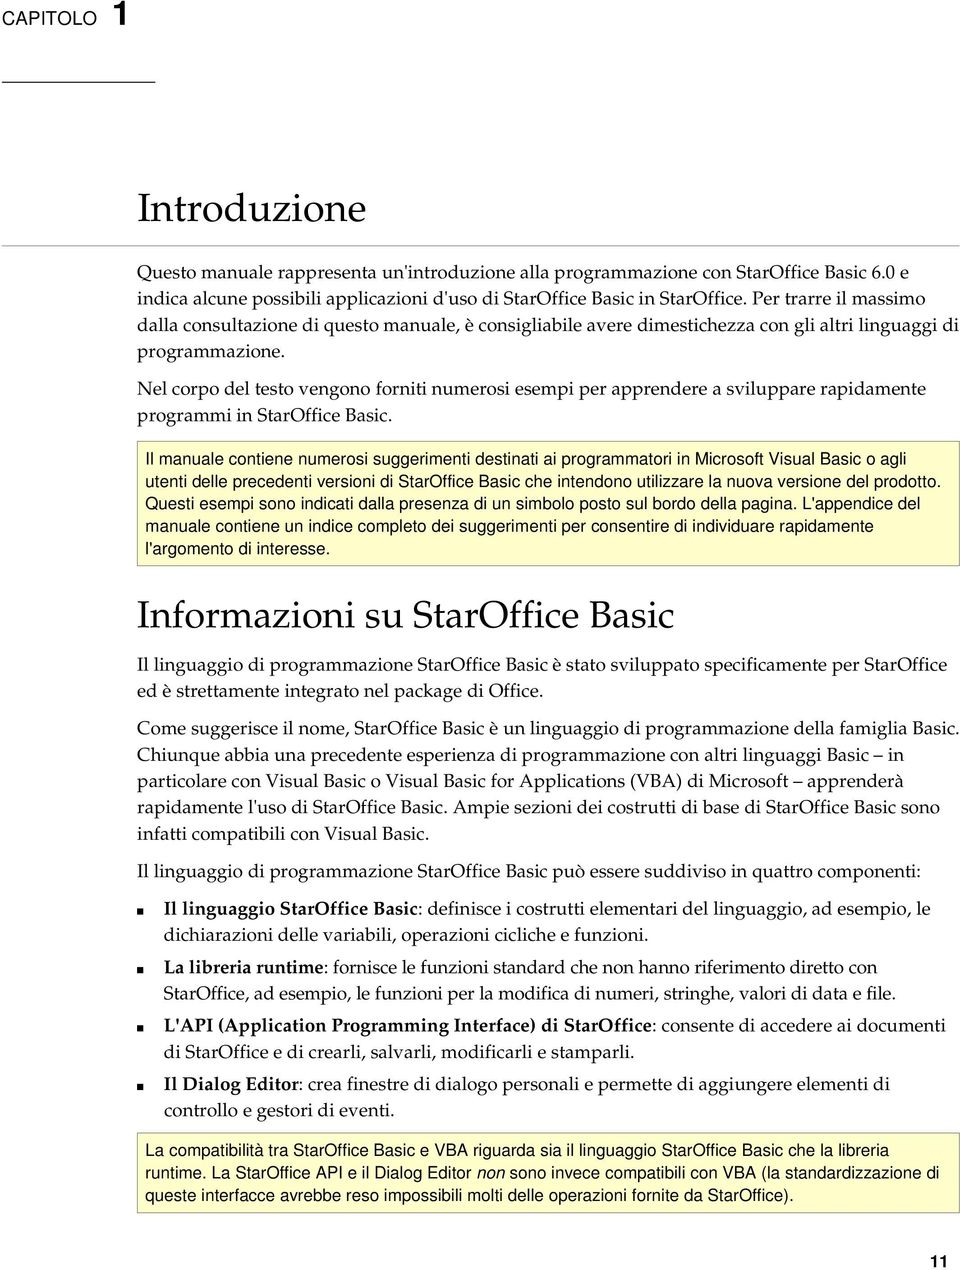 Nel corpo del testo vengono forniti numerosi esempi per apprendere a sviluppare rapidamente programmi in StarOffice Basic.